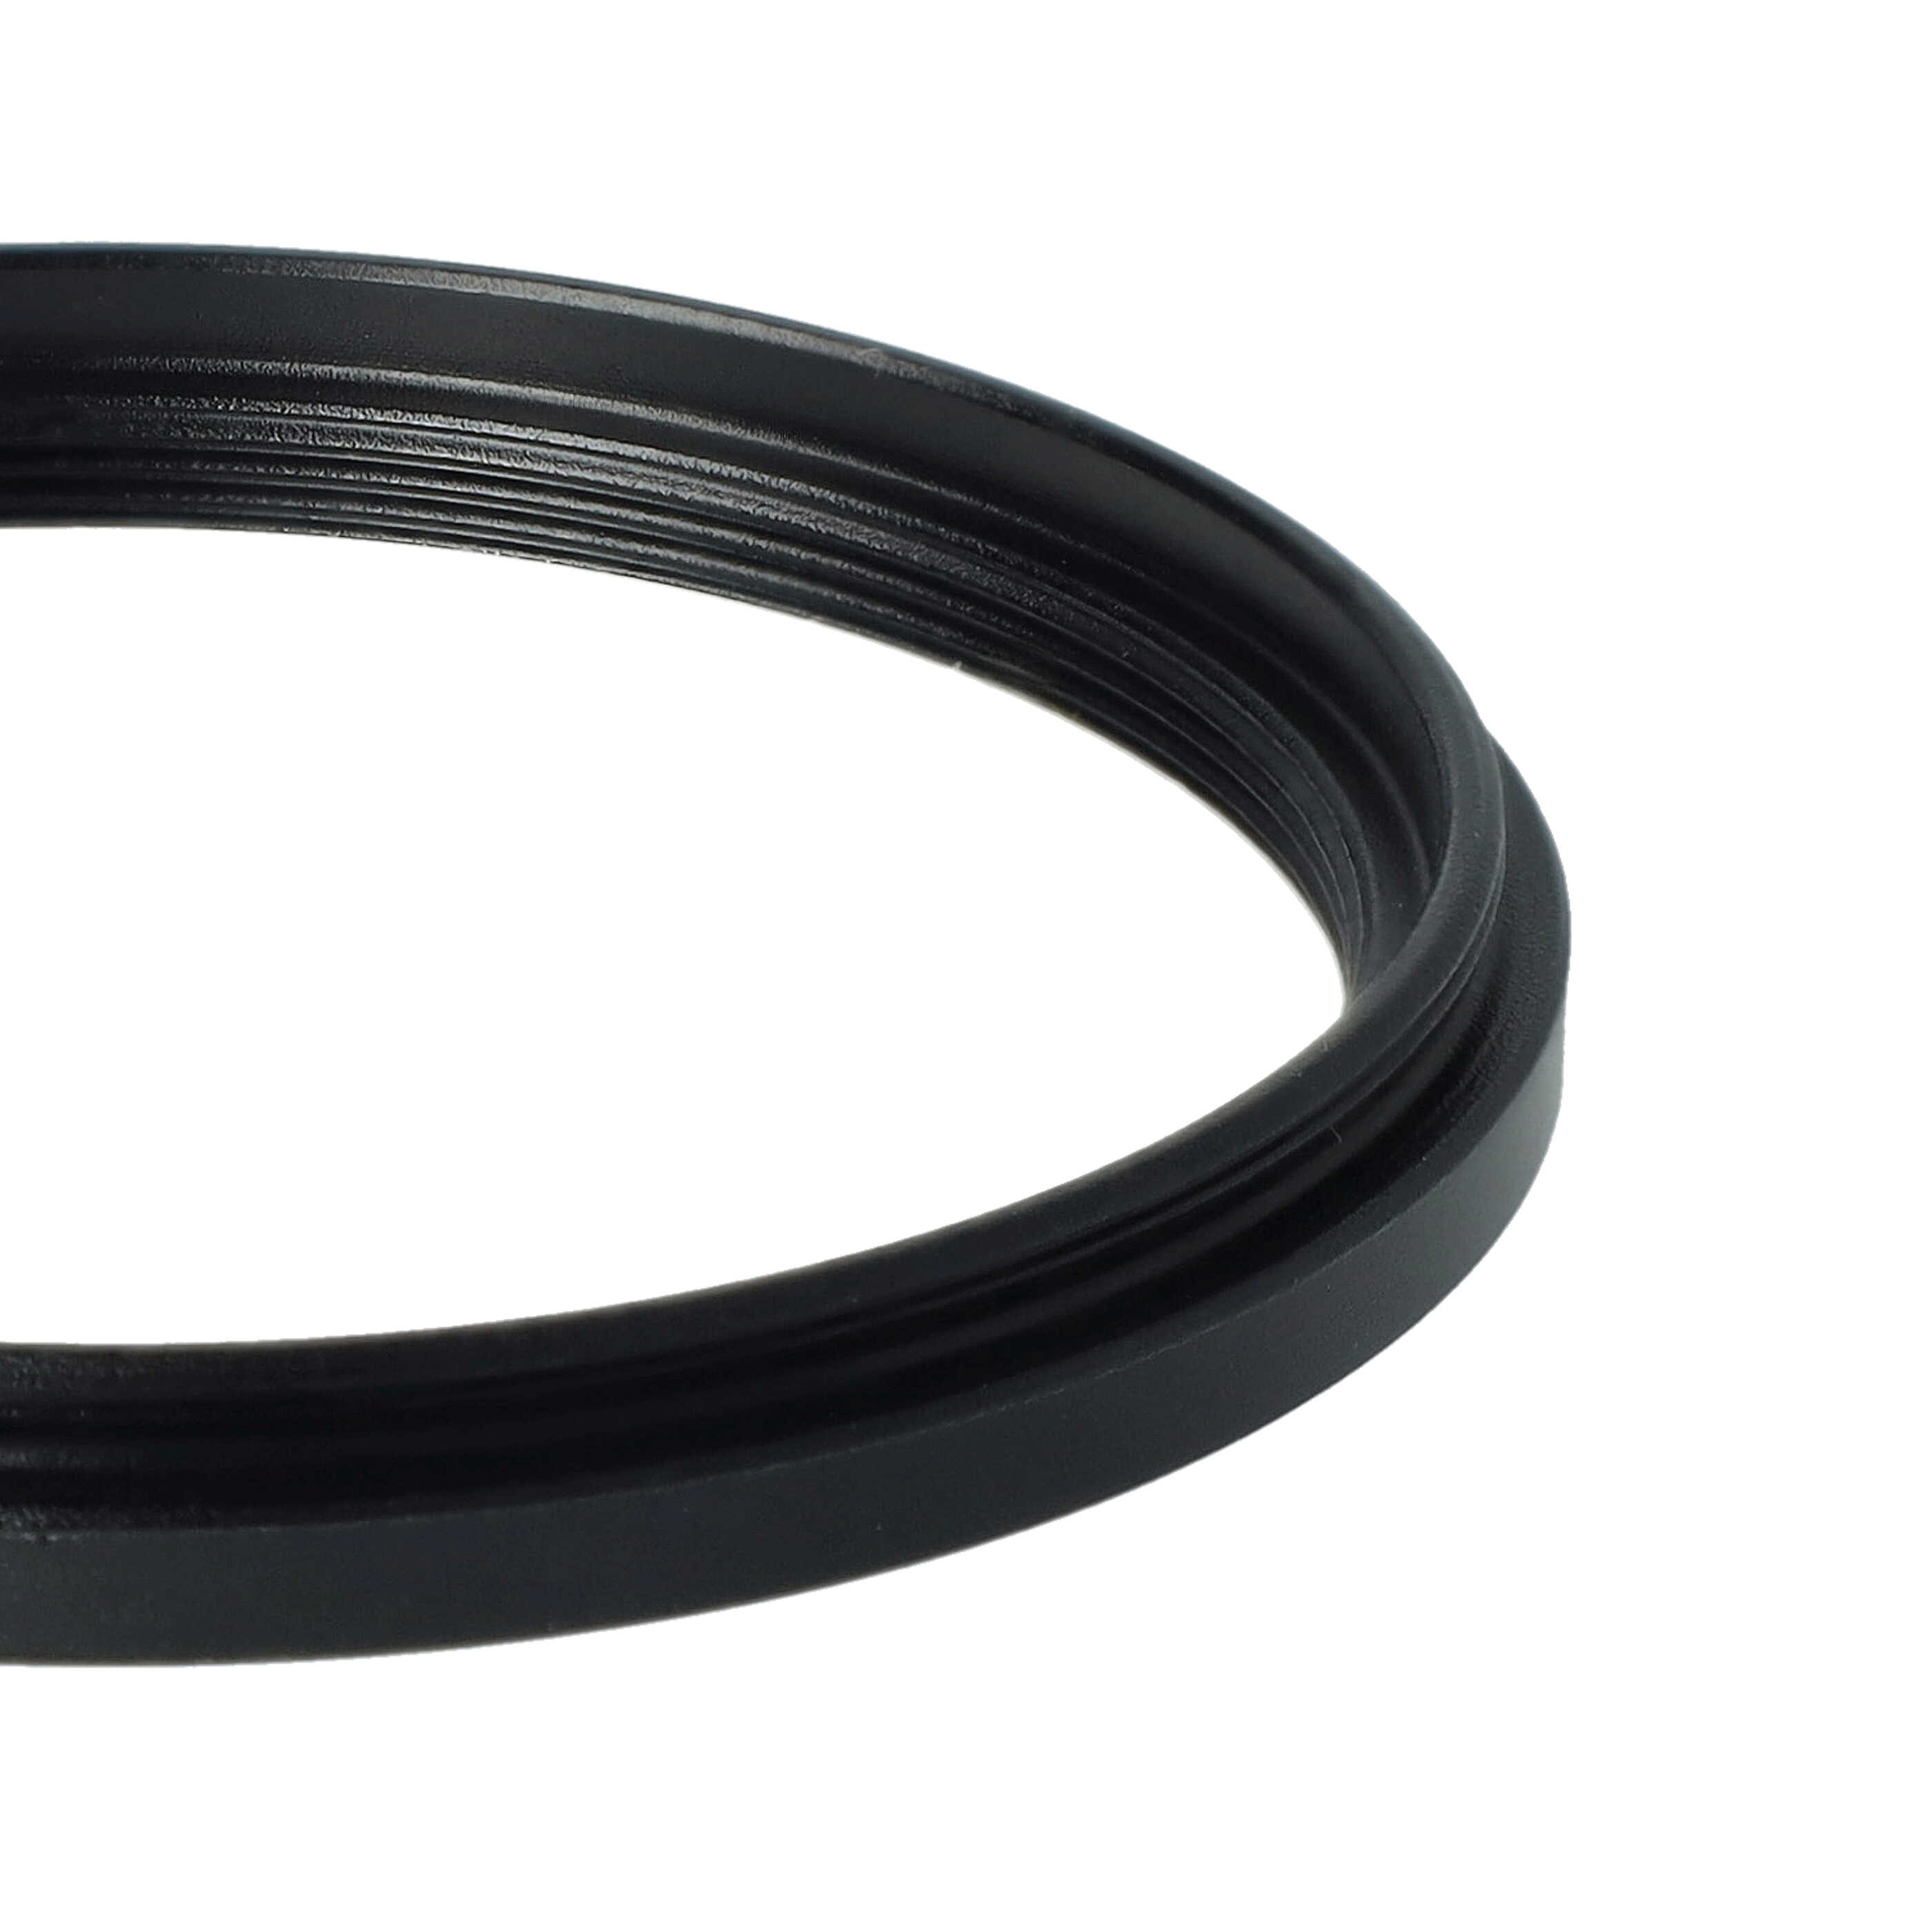 Anello adattatore step-down da 58 mm a 52 mm per obiettivo fotocamera - Adattatore filtro, metallo, nero